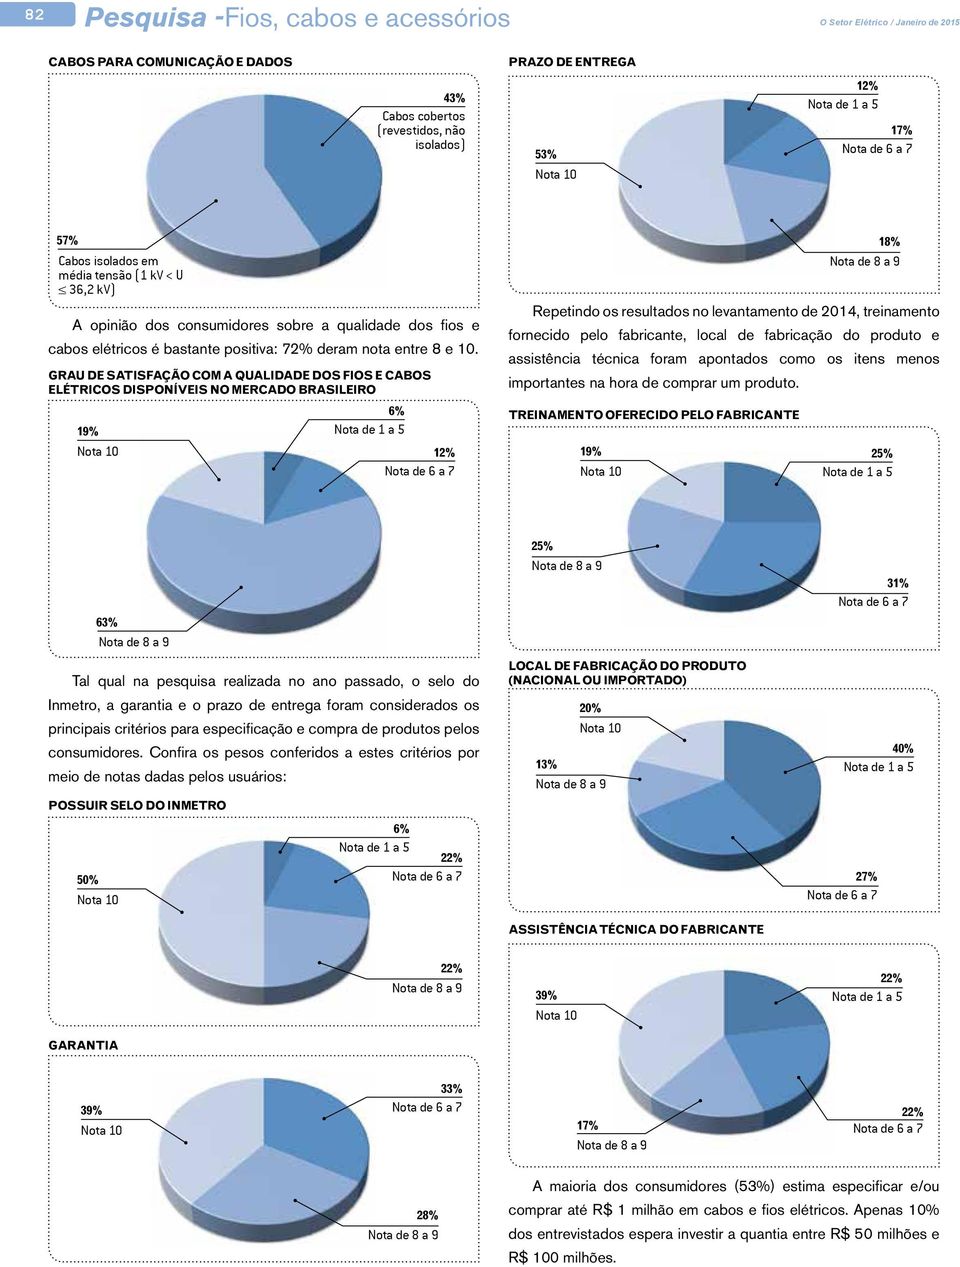 Grau de satisfação com a qualidade dos fios e cabos elétricos disponíveis no mercado brasileiro 19% 6% Nota de 1 a 5 12% 18% Repetindo os resultados no levantamento de 2014, treinamento fornecido